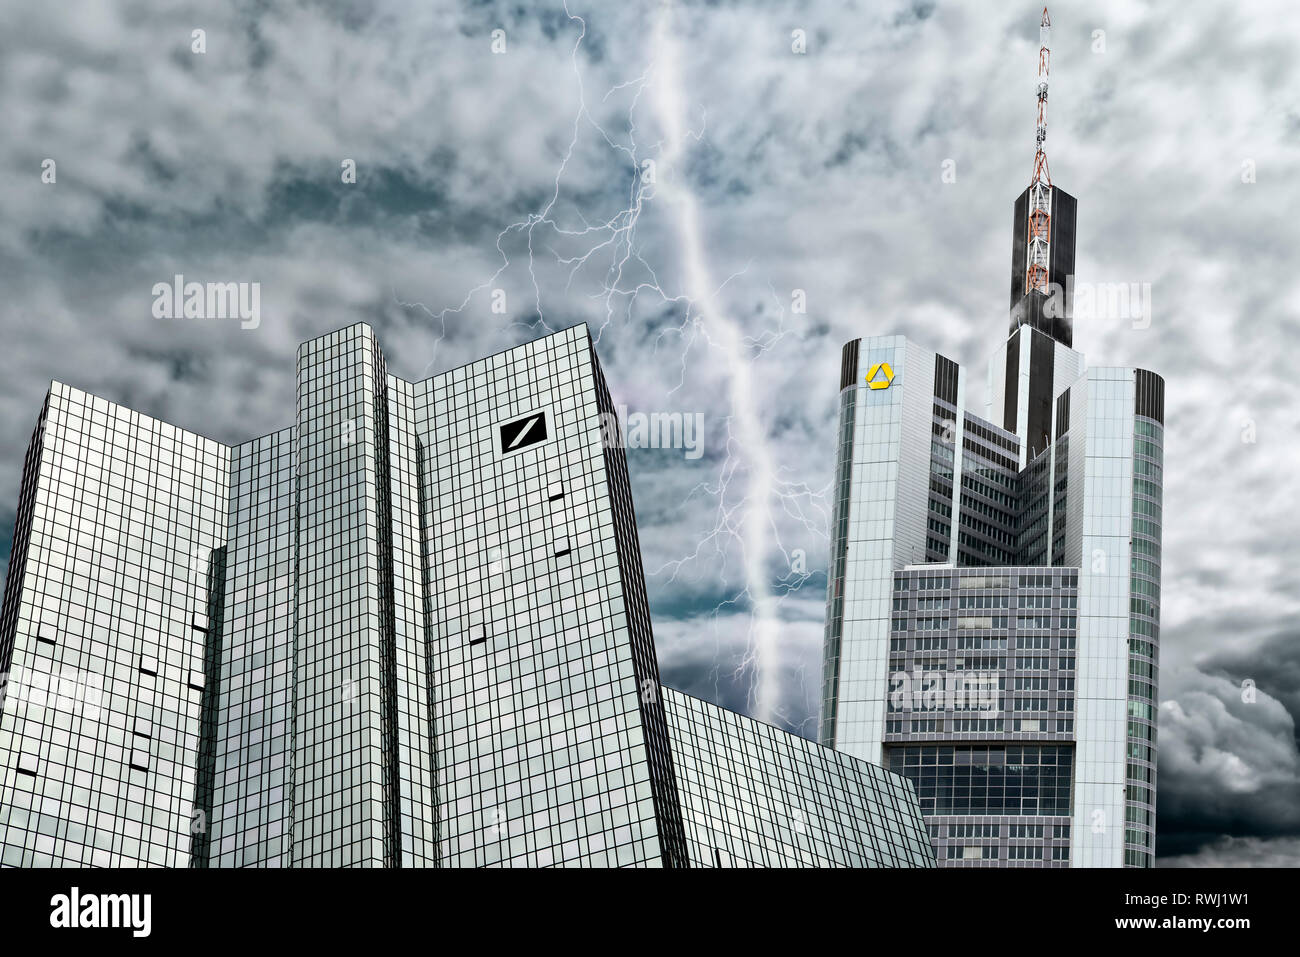 Deutsche Bank y Commerzbank en Frankfurt en frente de un cielo gris, simbolizando la crisis de las instituciones financieras y su posible fusión.[M] Foto de stock